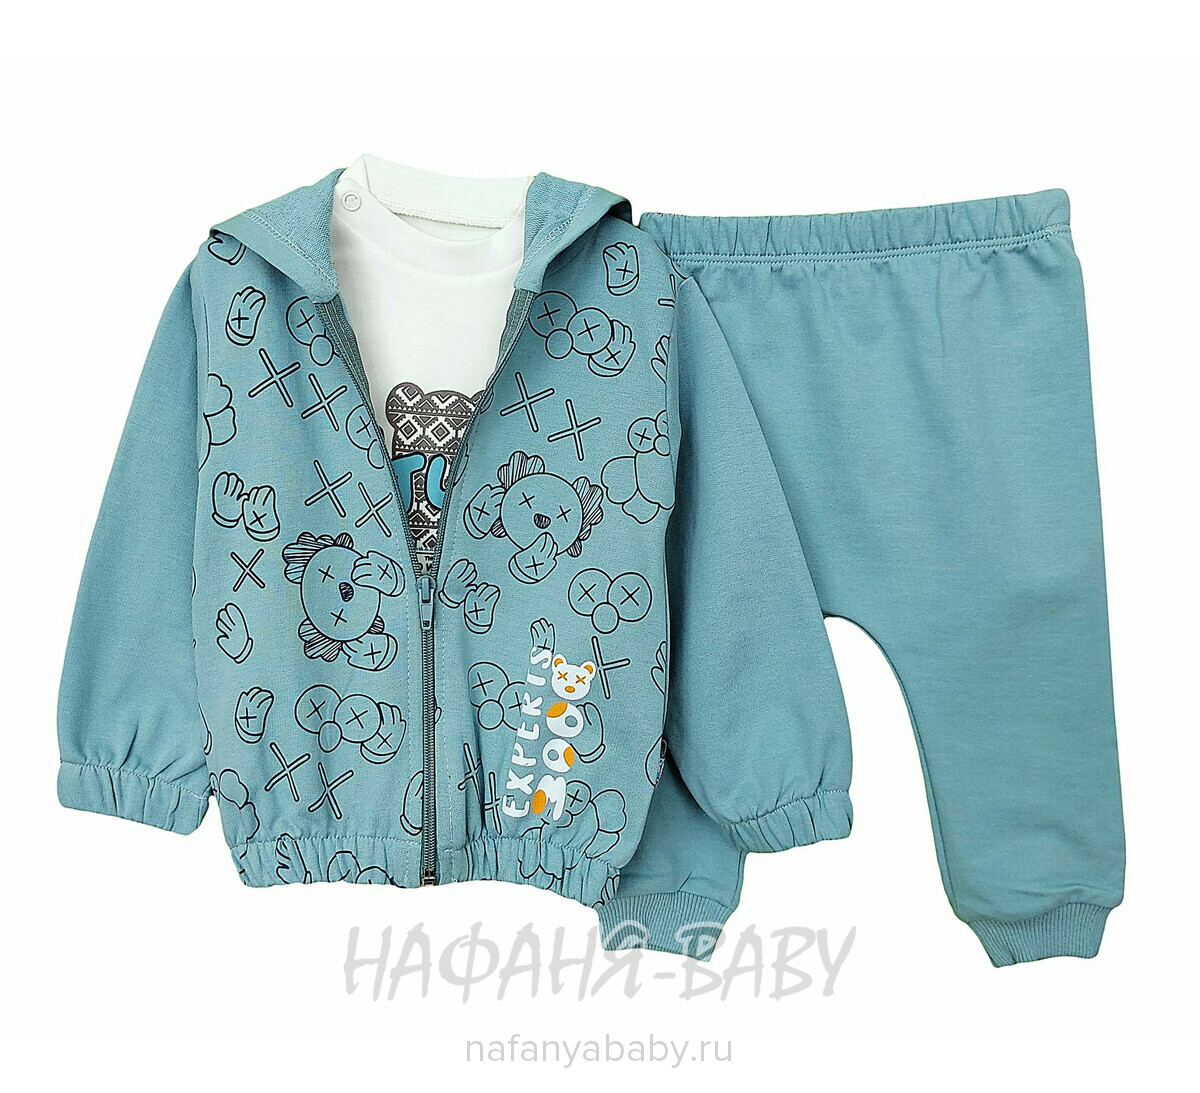 Детский костюм Happy Baby арт. 12021 от 6 до 24 мес, цвет дымчатый хаки, оптом Турция